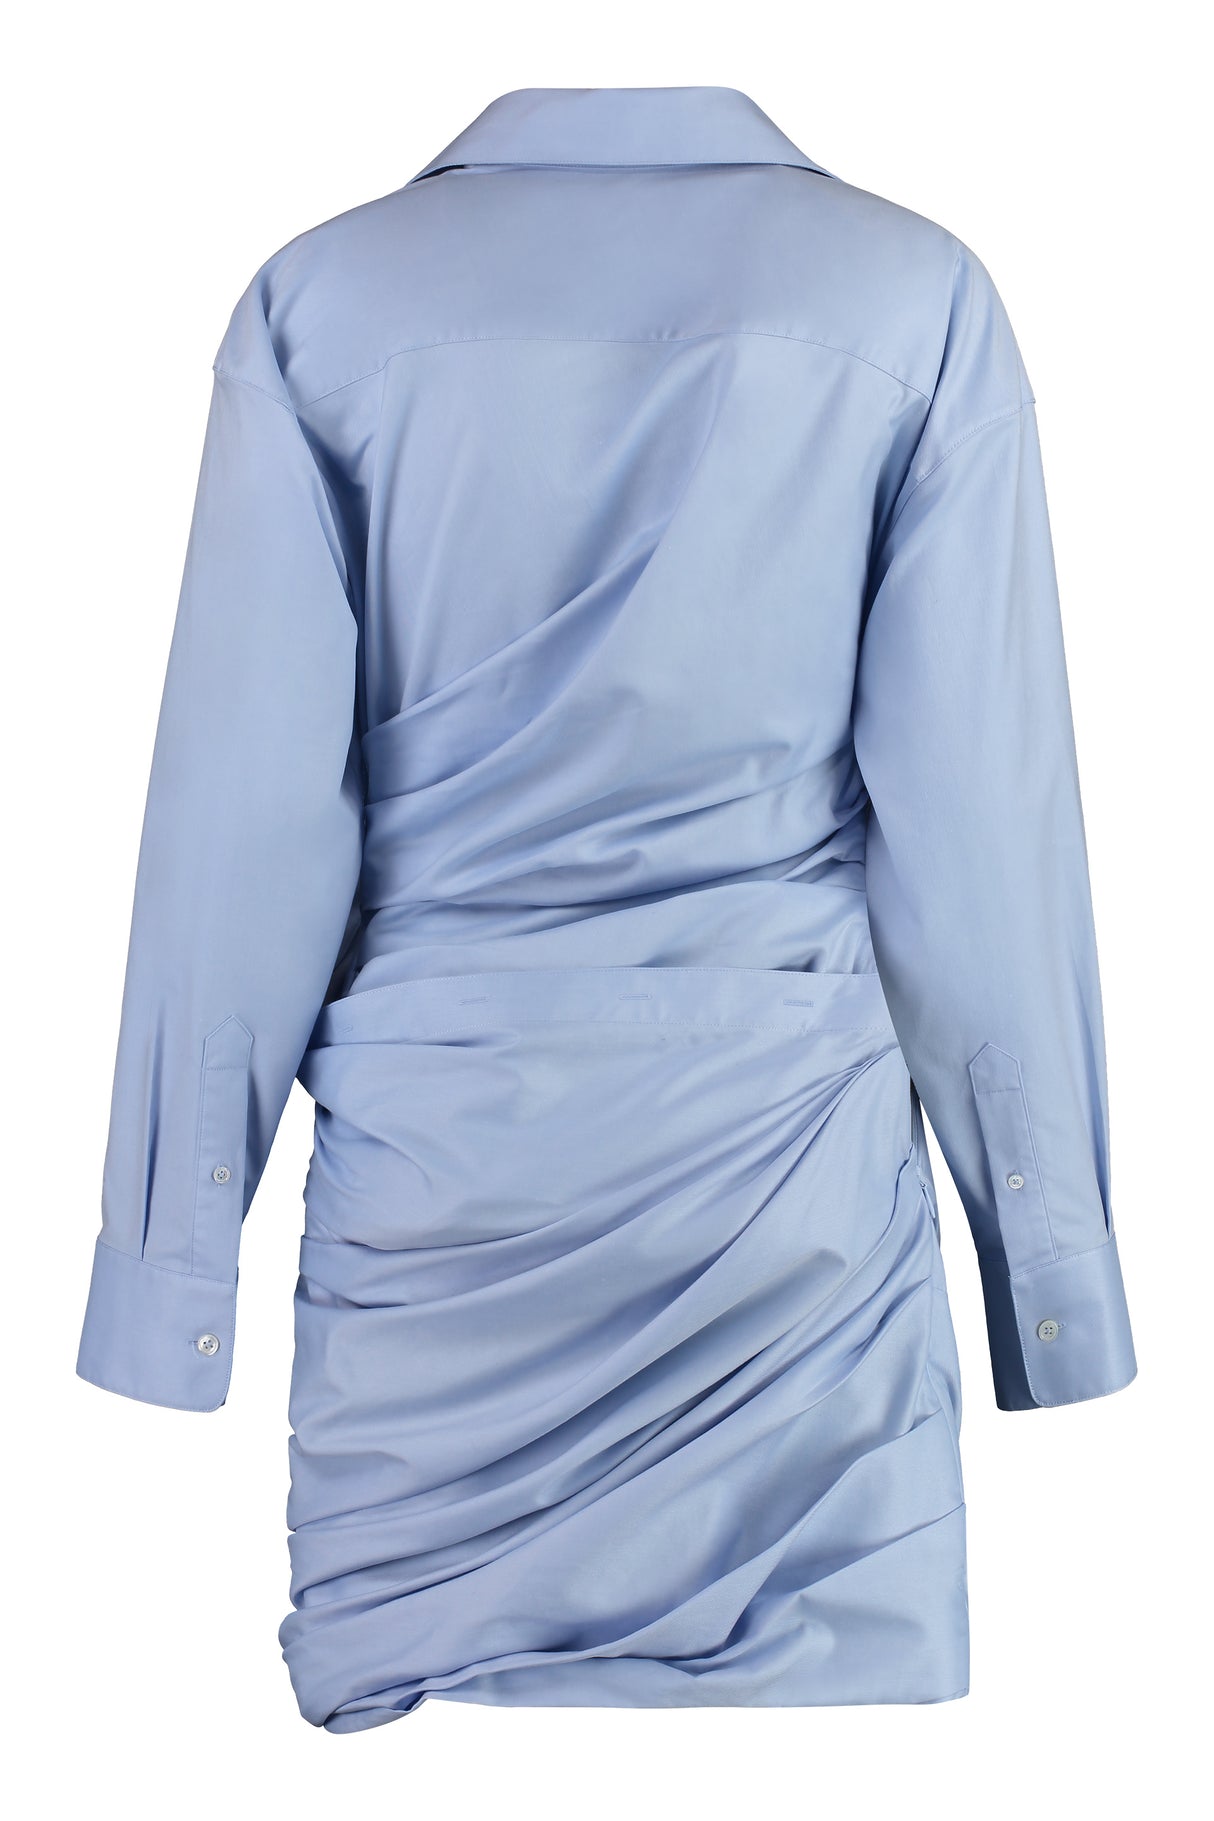 فستان قطني قصير باللون الأزرق الفاتح للنساء